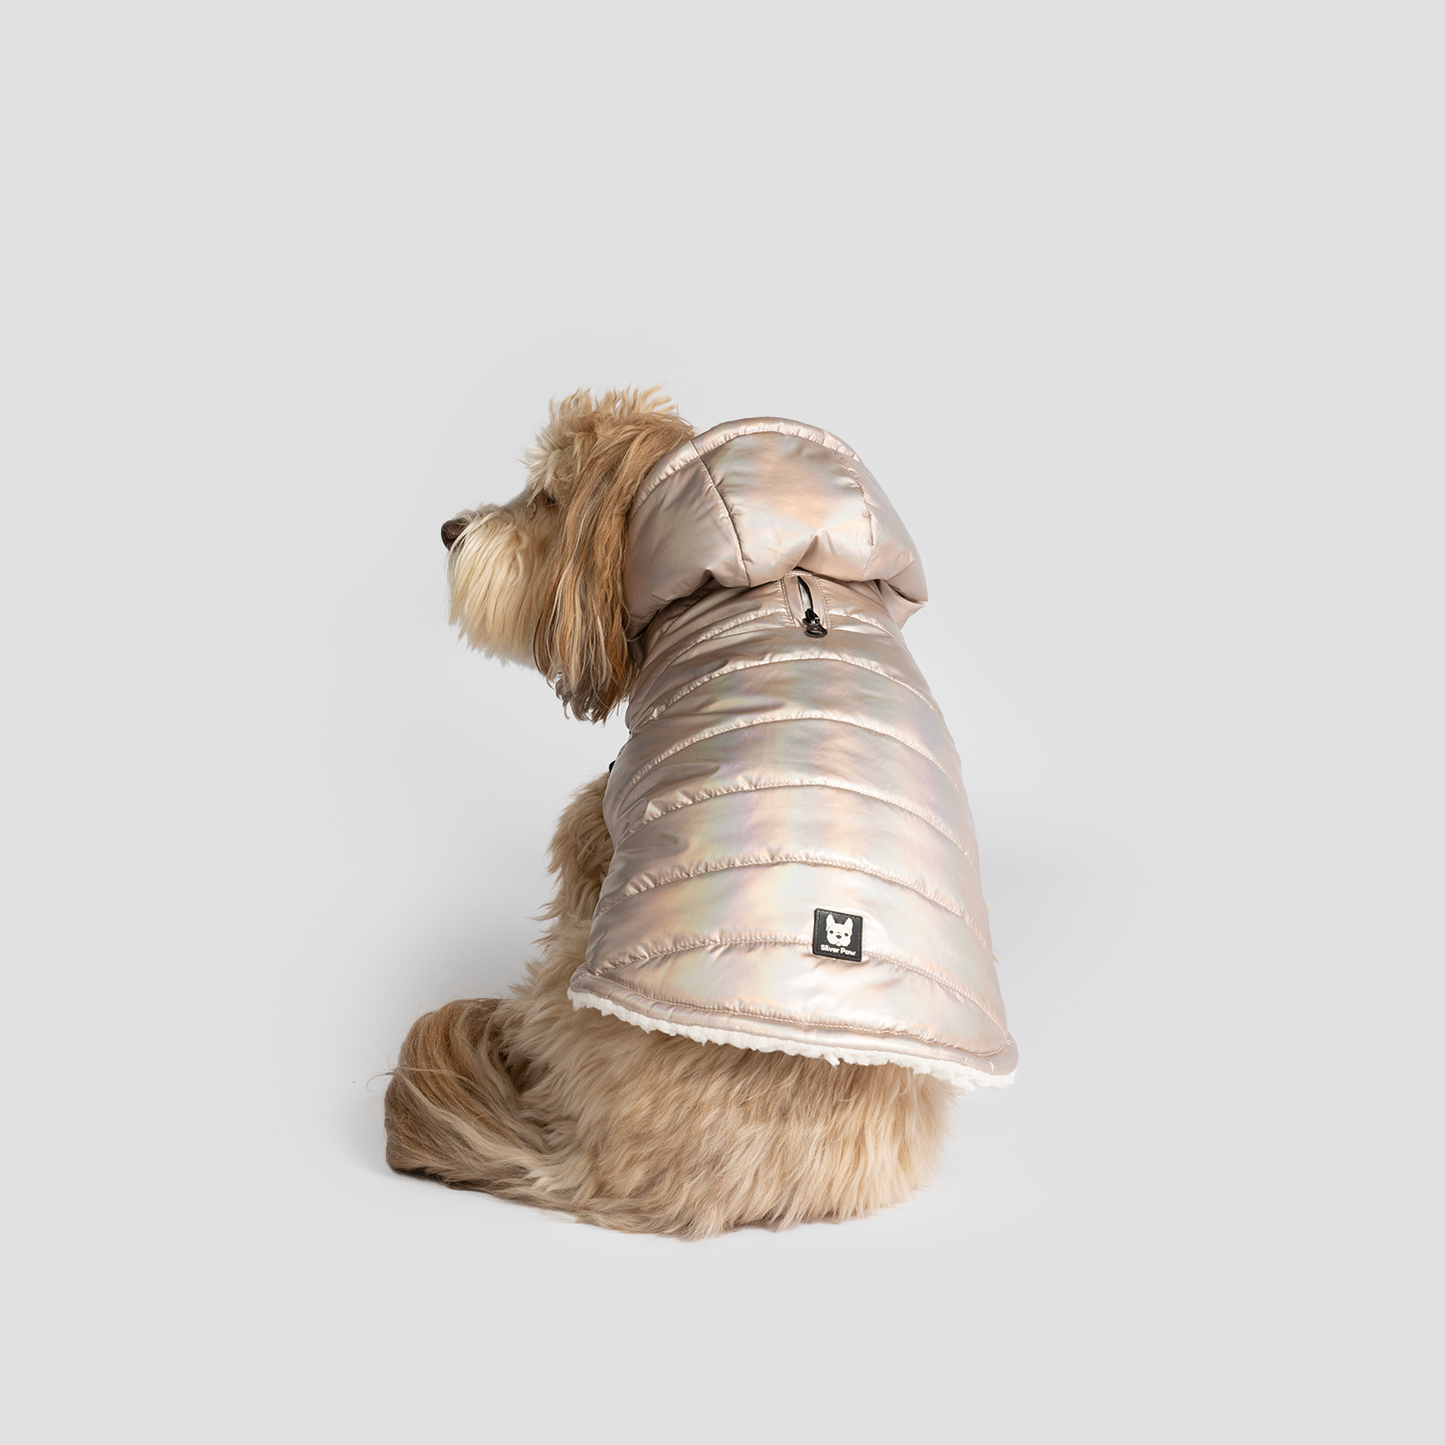 Emma Dog Jacket - Shiny Pink:  Image